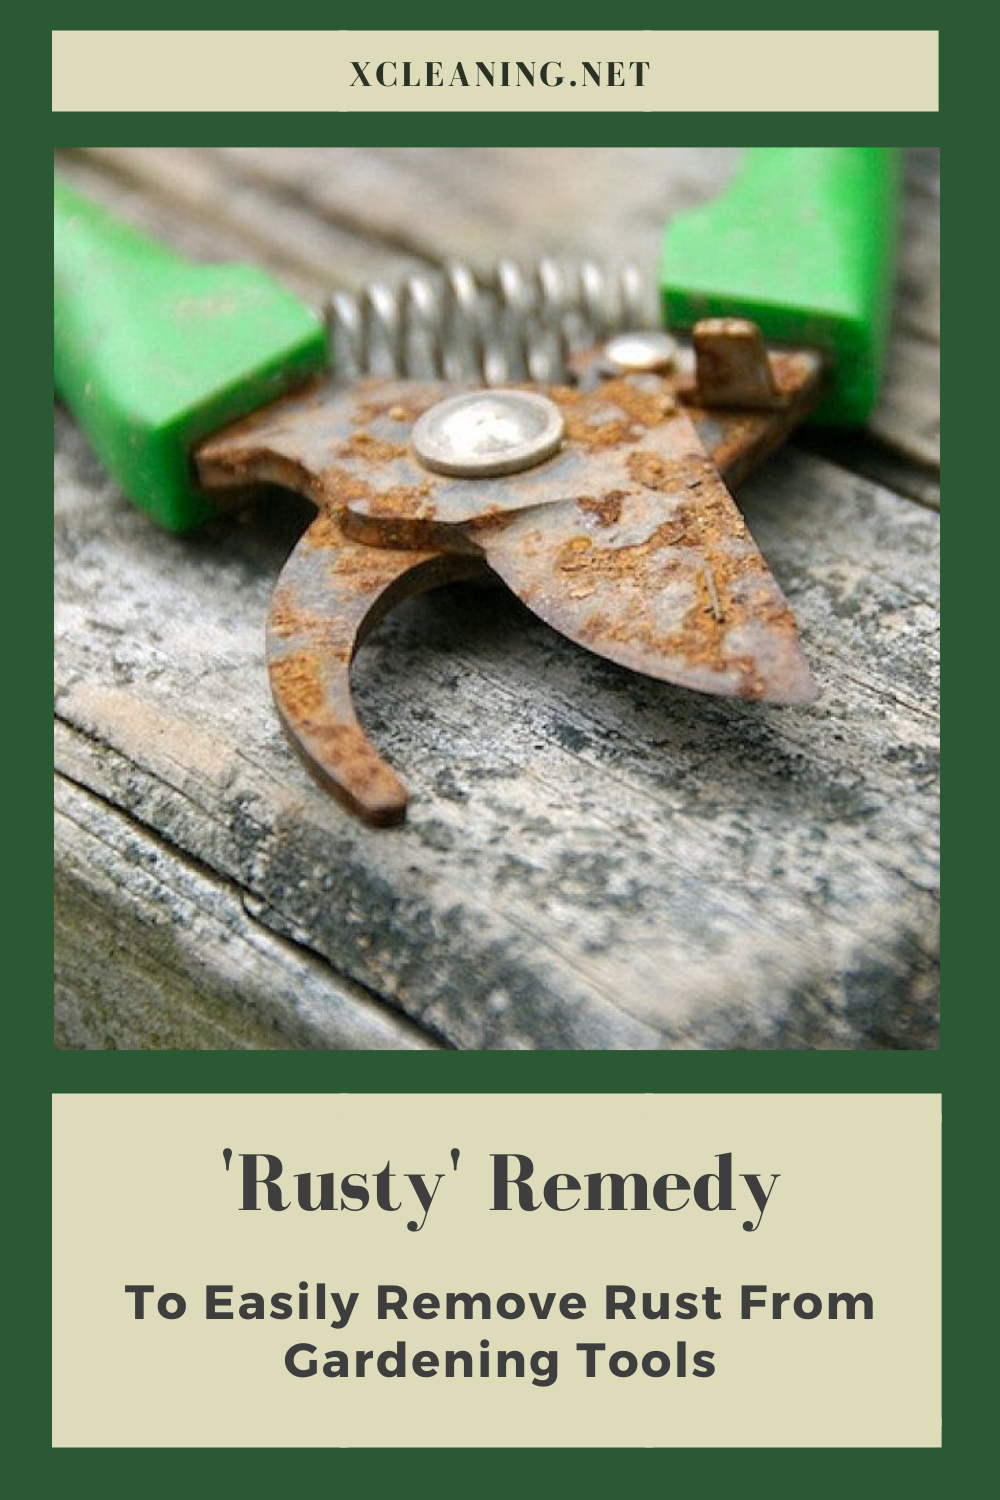 Rusty Garden Tools